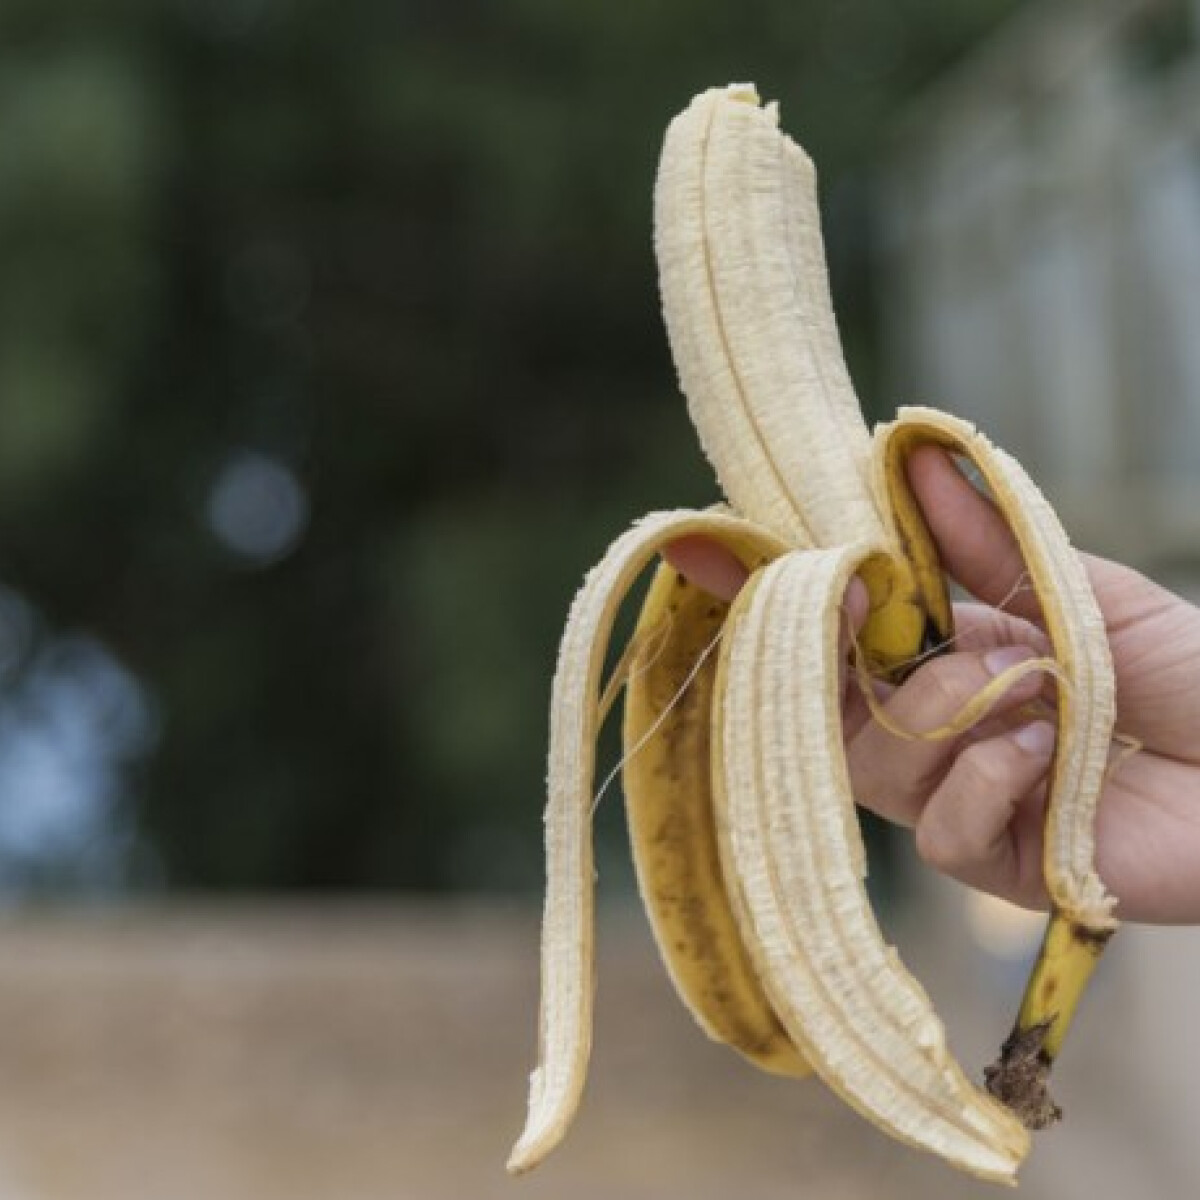 Hihetetlen! - itt az ehető héjú banán